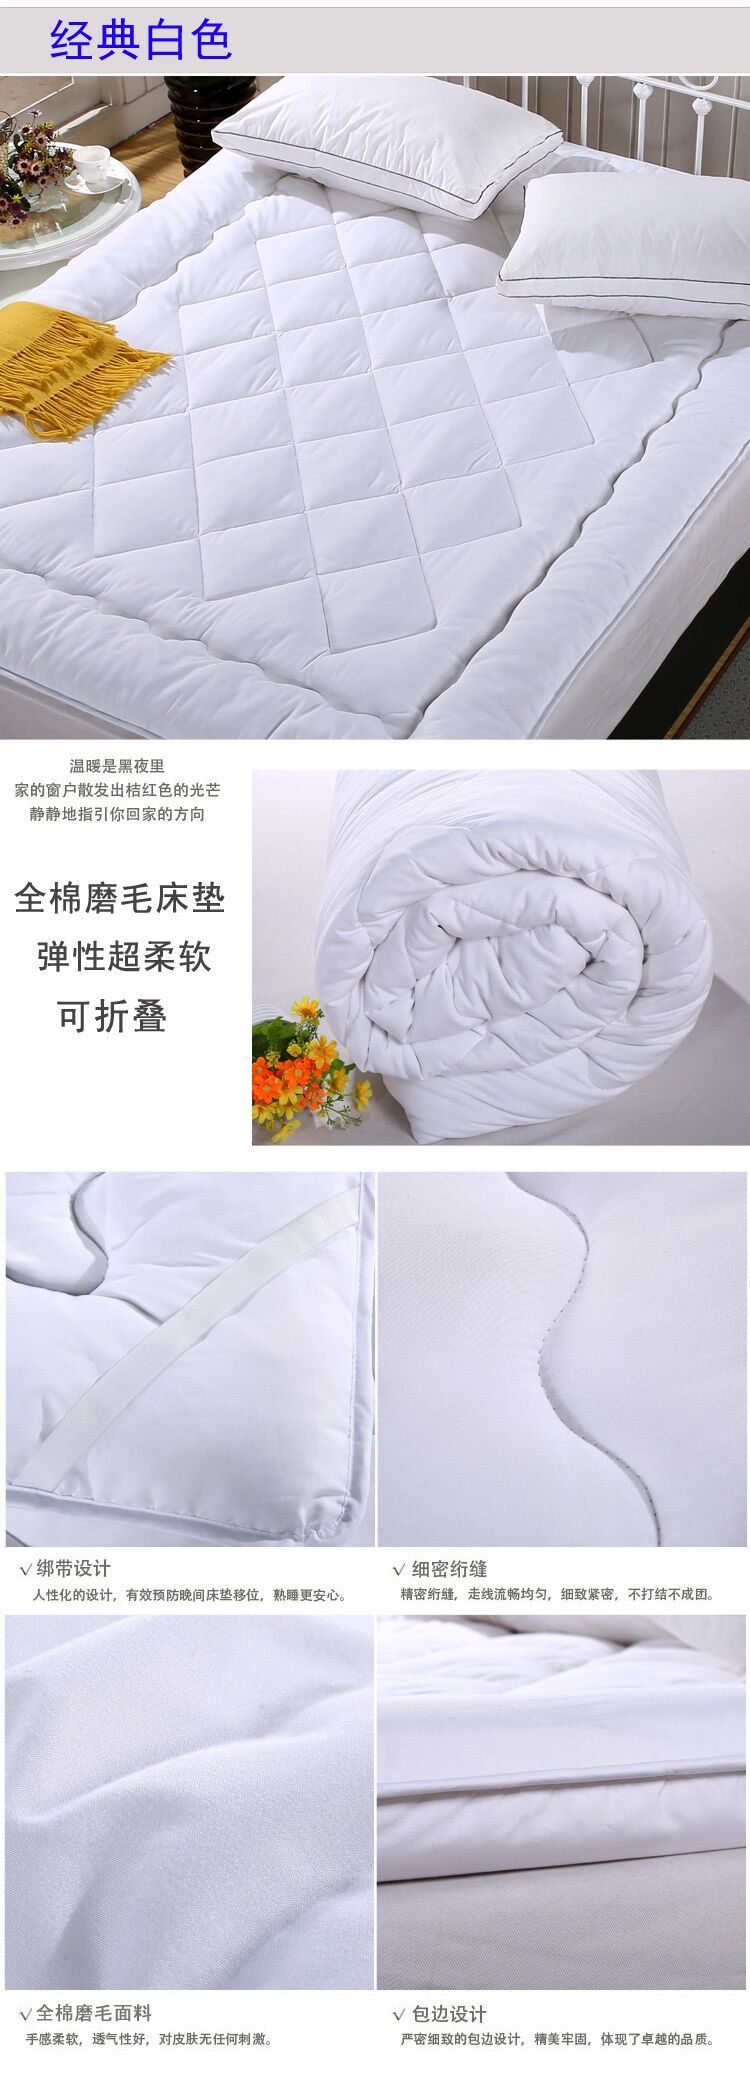 厂家直销床垫批发 酒店宾馆保护床垫床上用品床护垫舒适懒人褥子